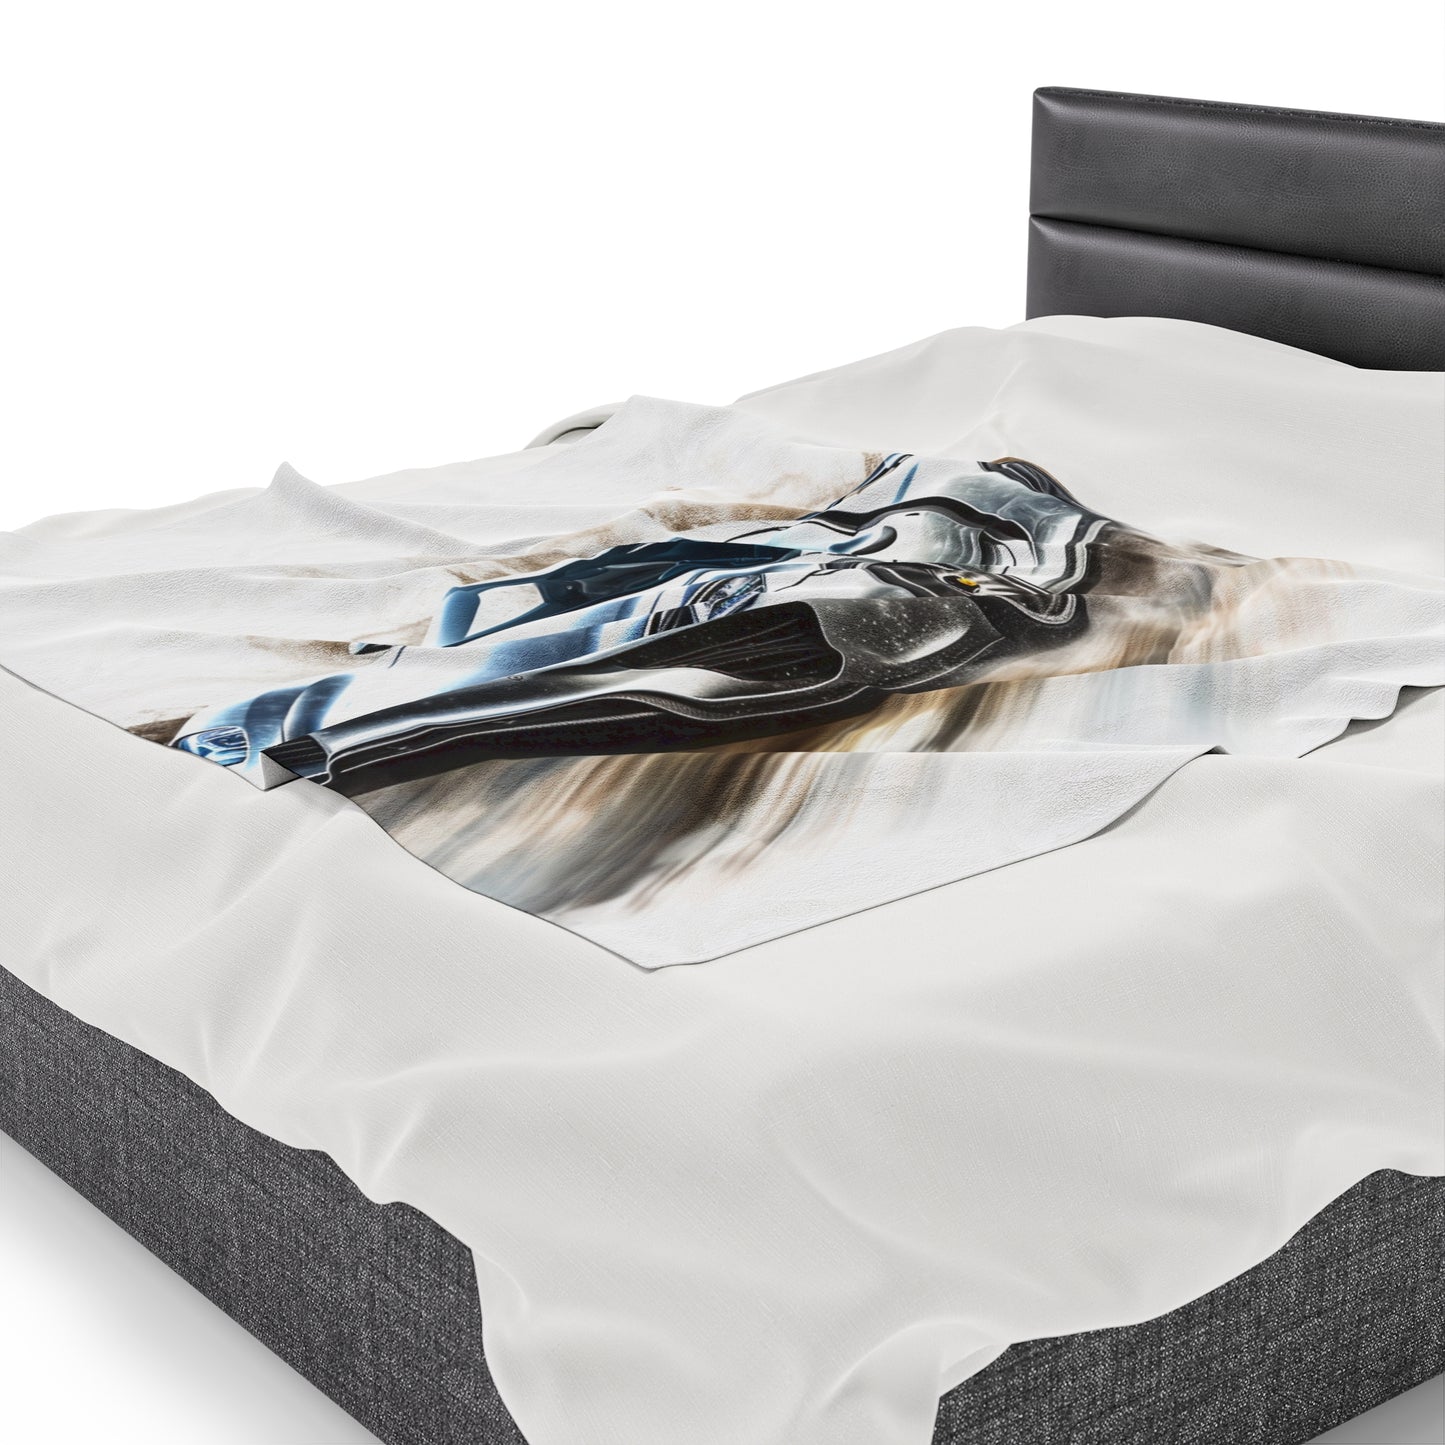 Velveteen Plush Blanket 918 Spyder white background driving fast with water splashing 2